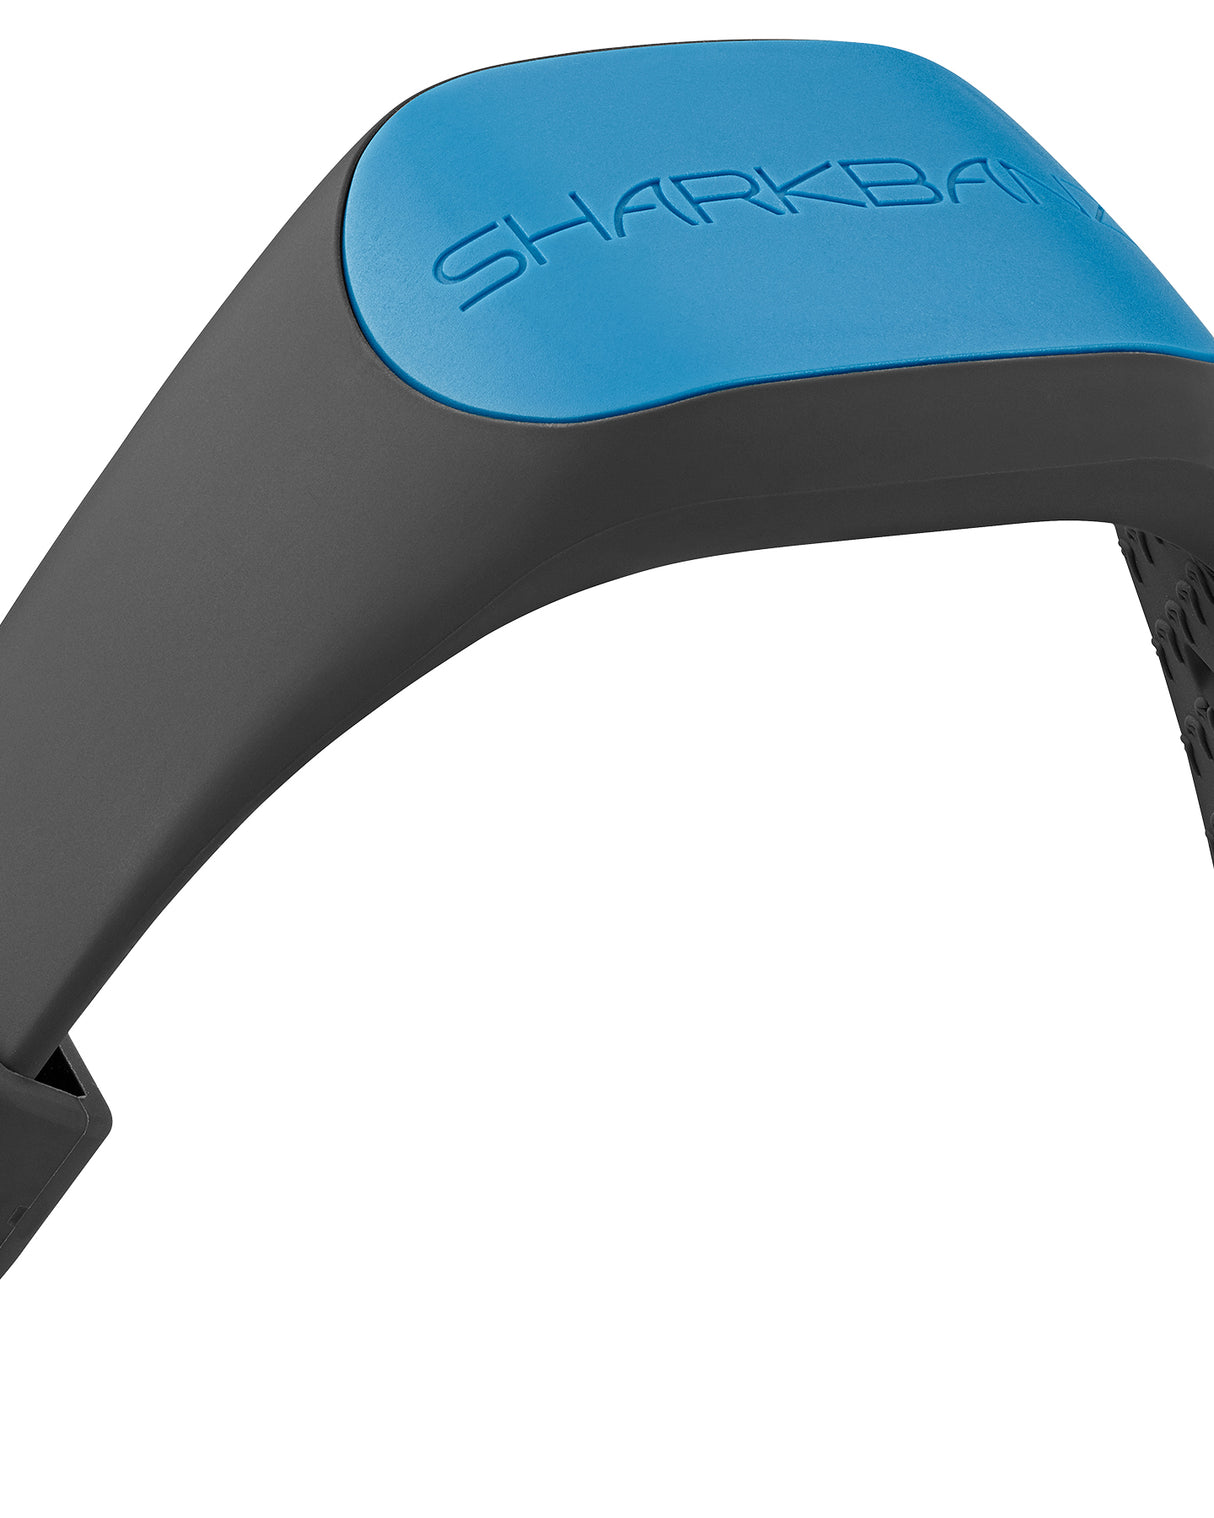 Sharkbanz Slate/Azure Shark Deterrent Band